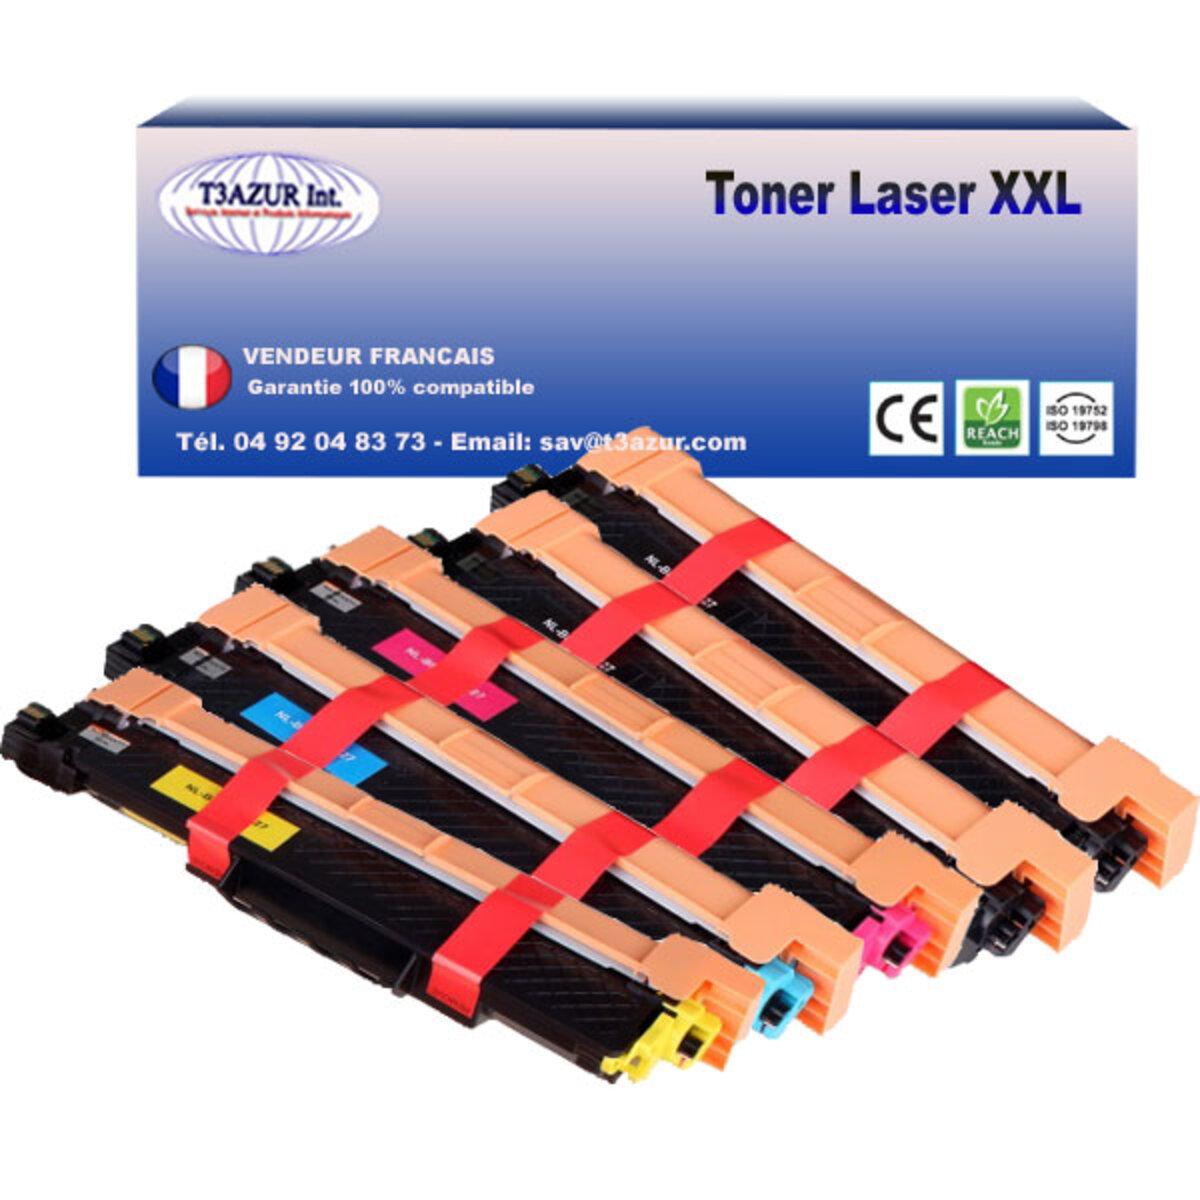 Imprimante laser couleur Brother HL-L3210CW - La Poste